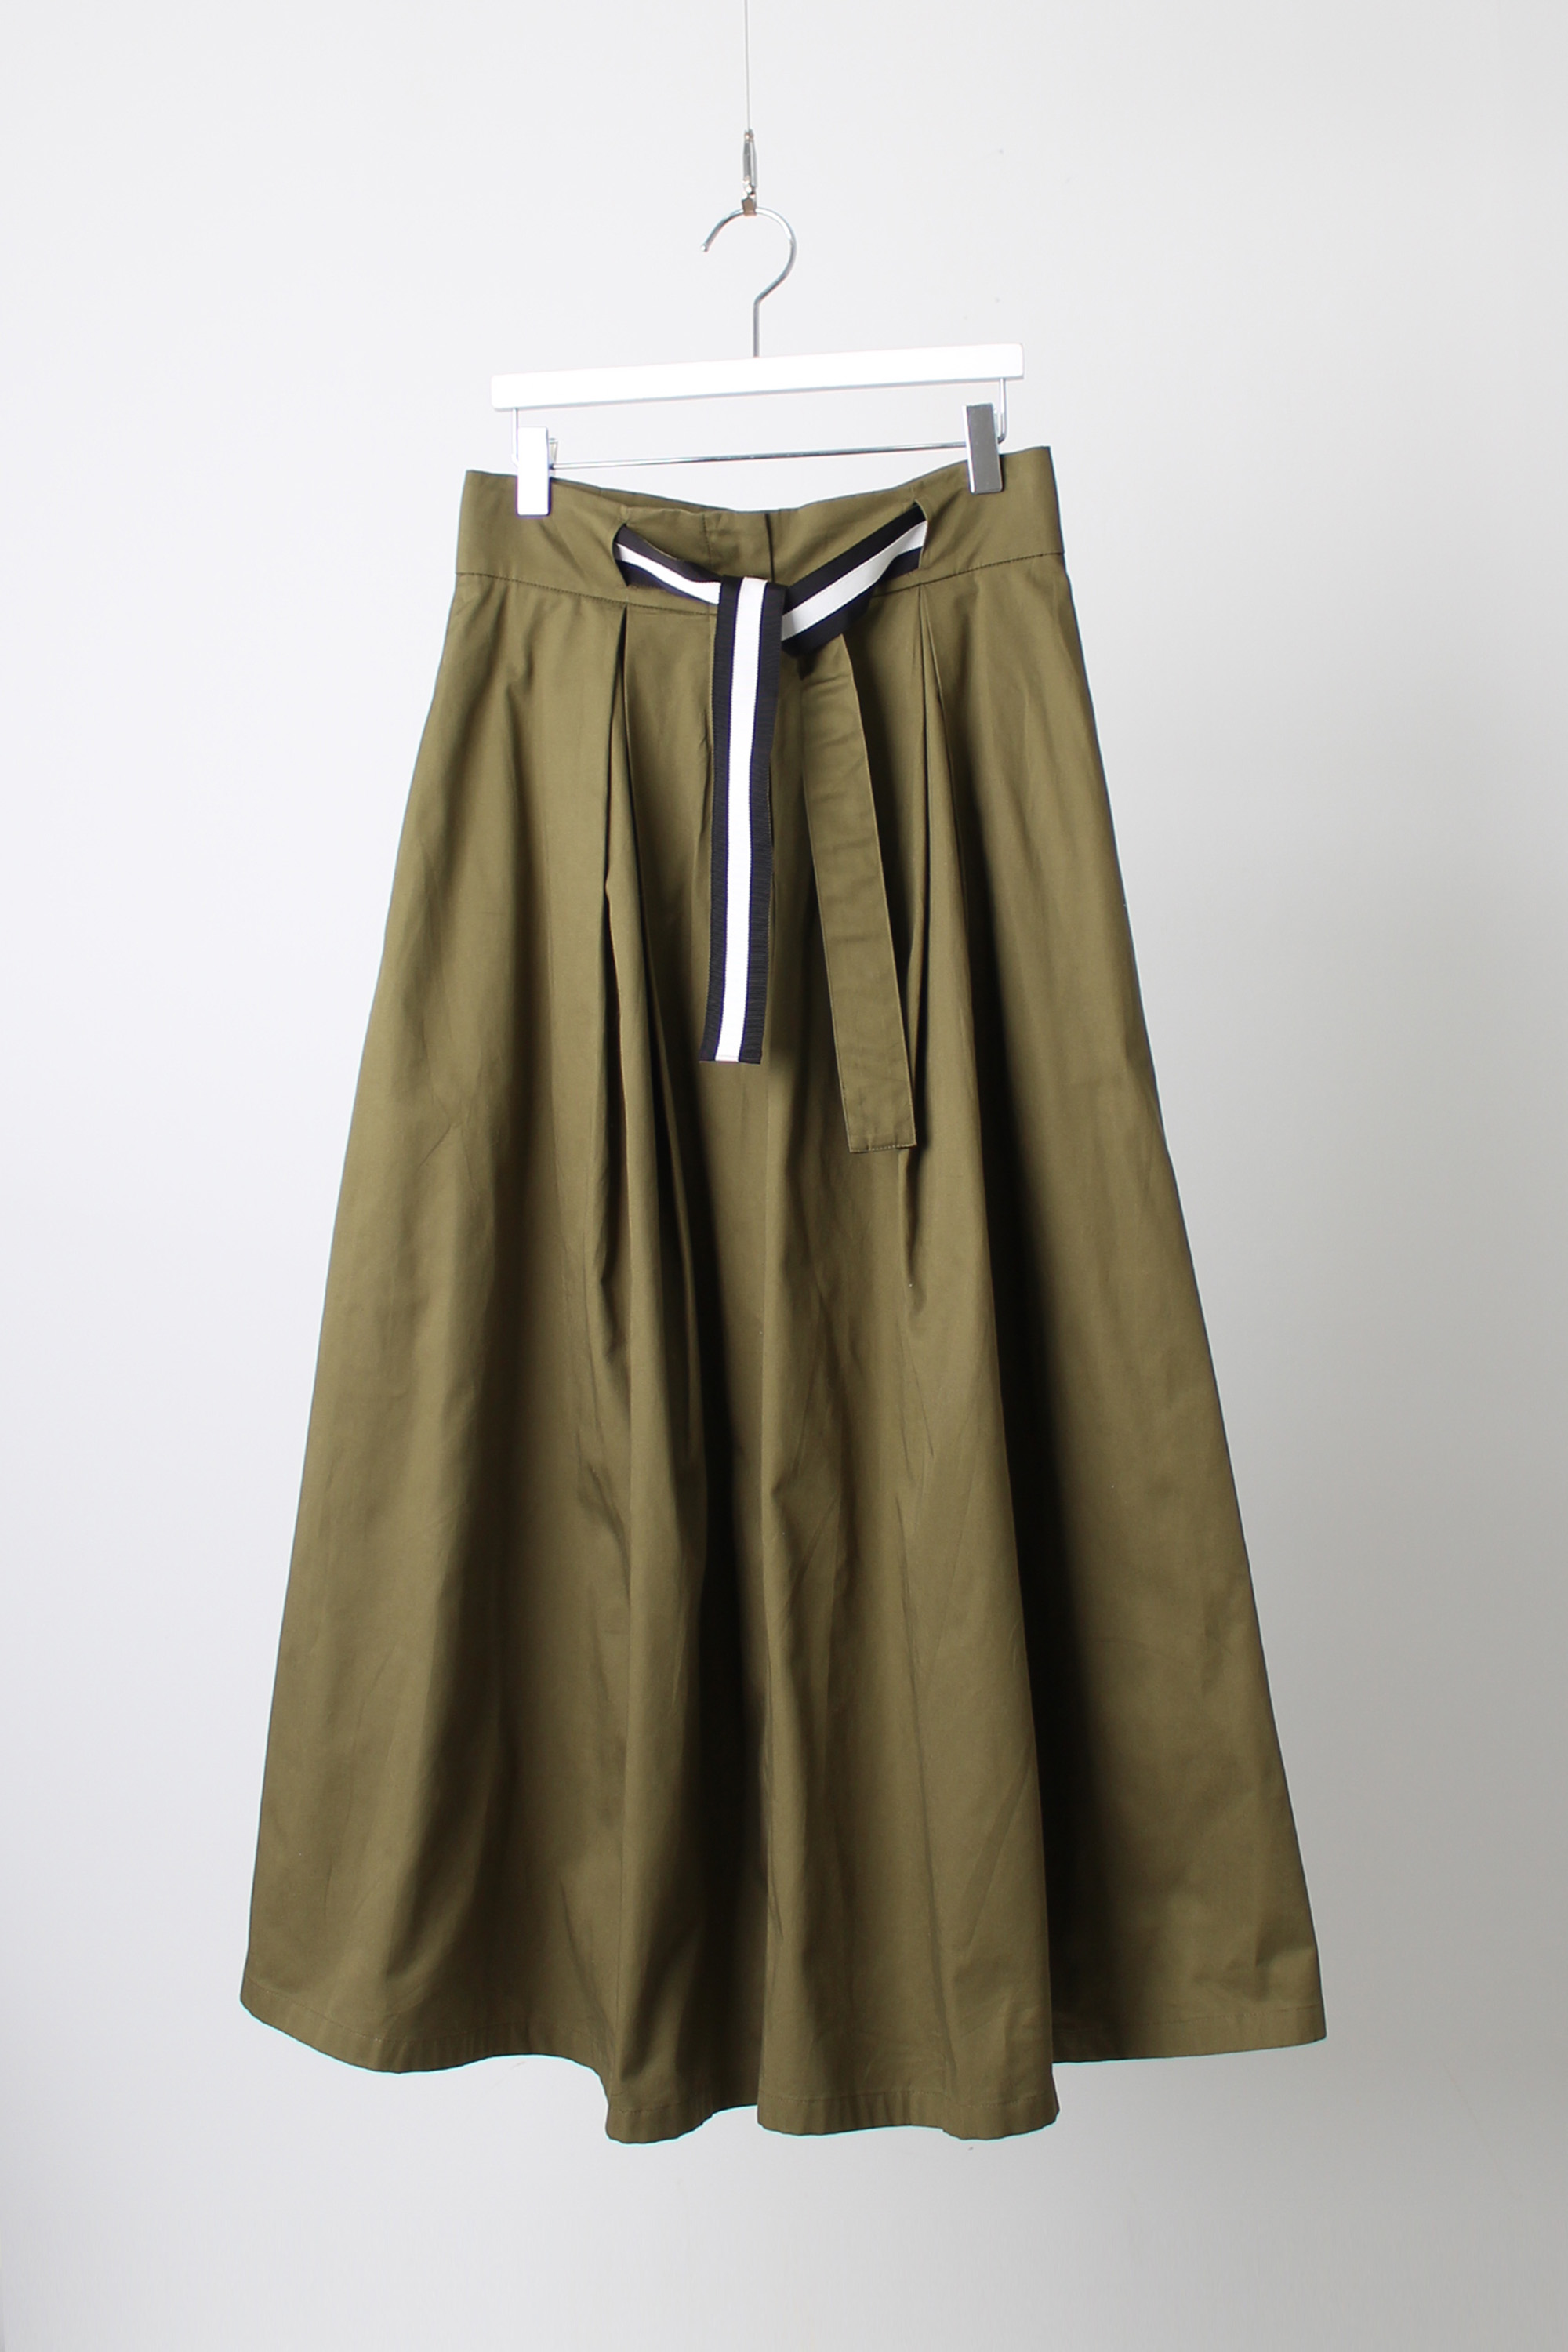 Agnes b A-line skirt